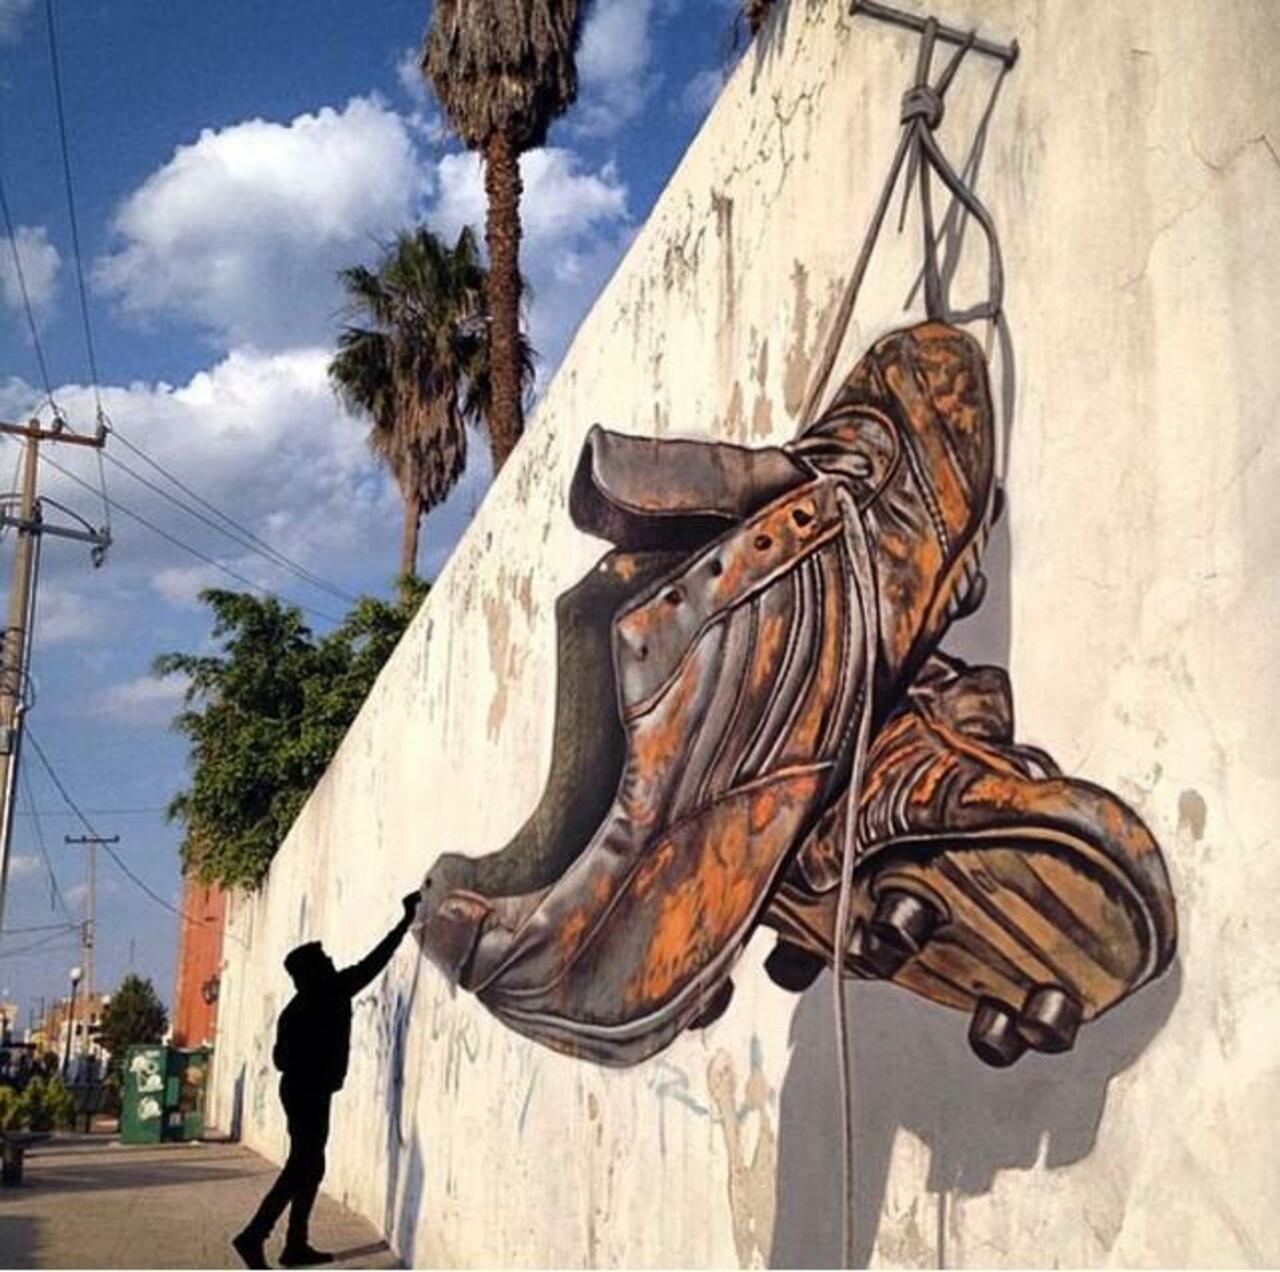 Juandres Vera 
3D steetart

#art #graffiti #mural #streetart http://t.co/mPhBfPhmG7 via @GoogleStreetArt